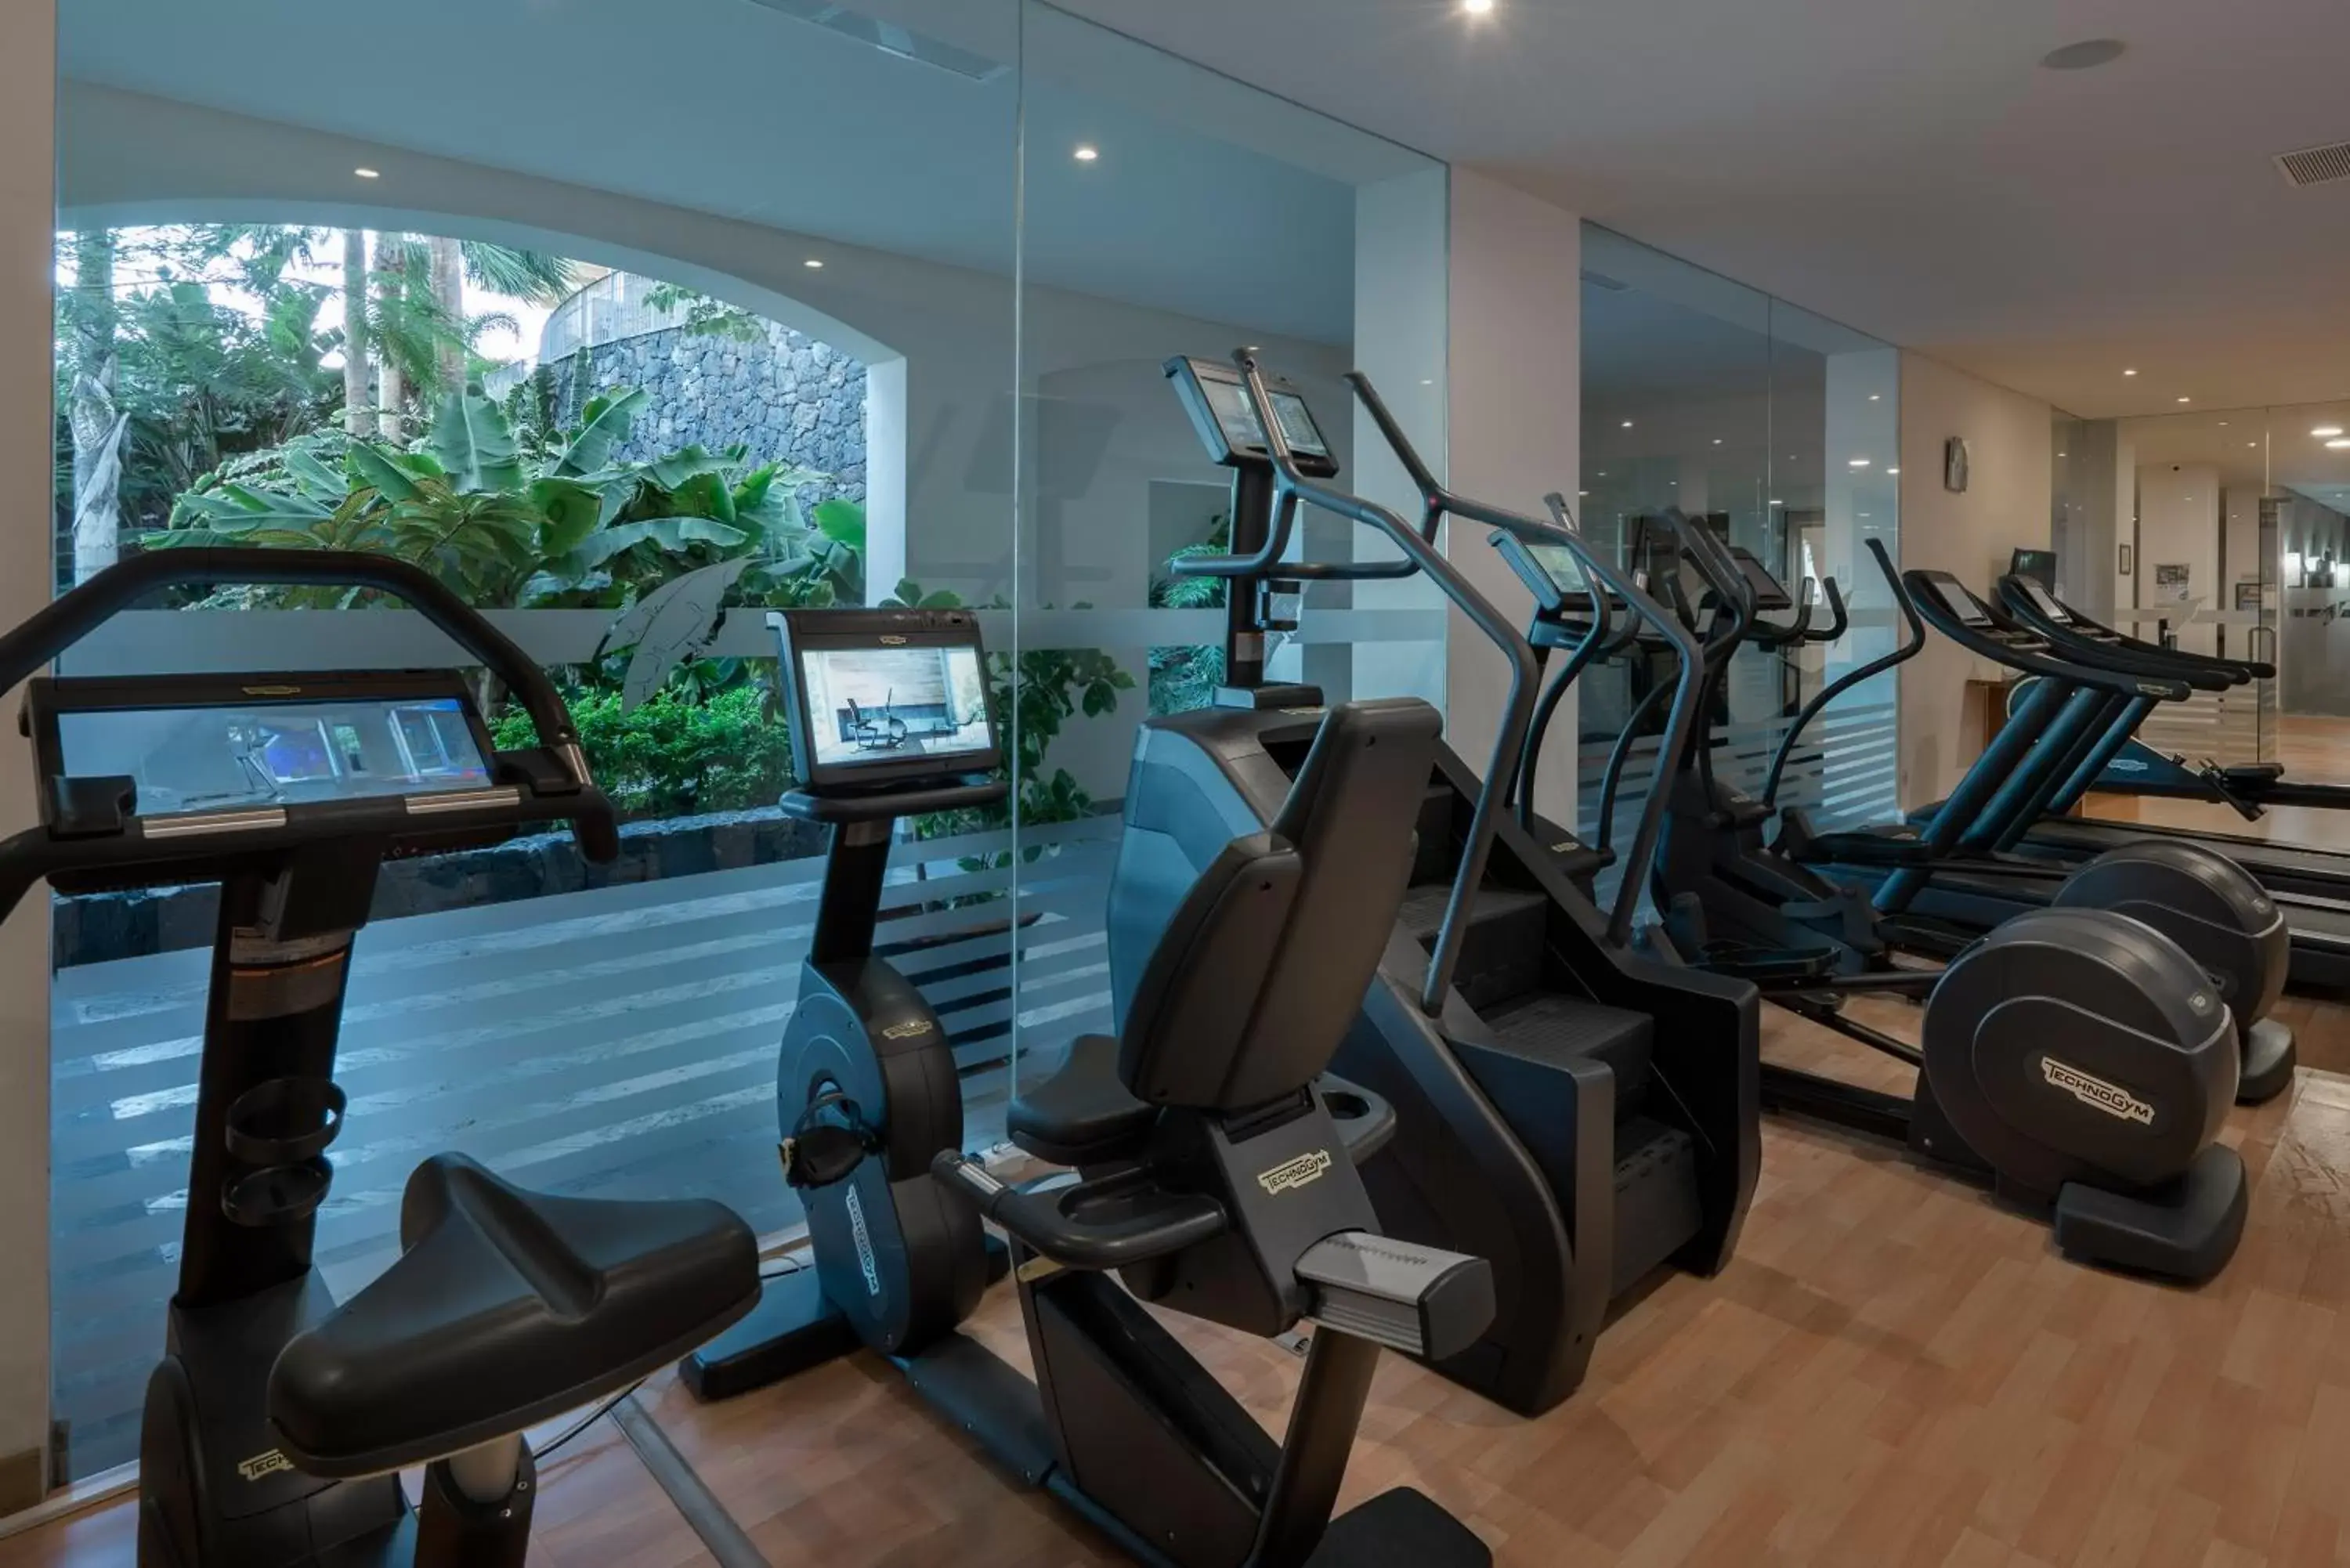 Fitness centre/facilities, Fitness Center/Facilities in Vincci Selección La Plantación del Sur